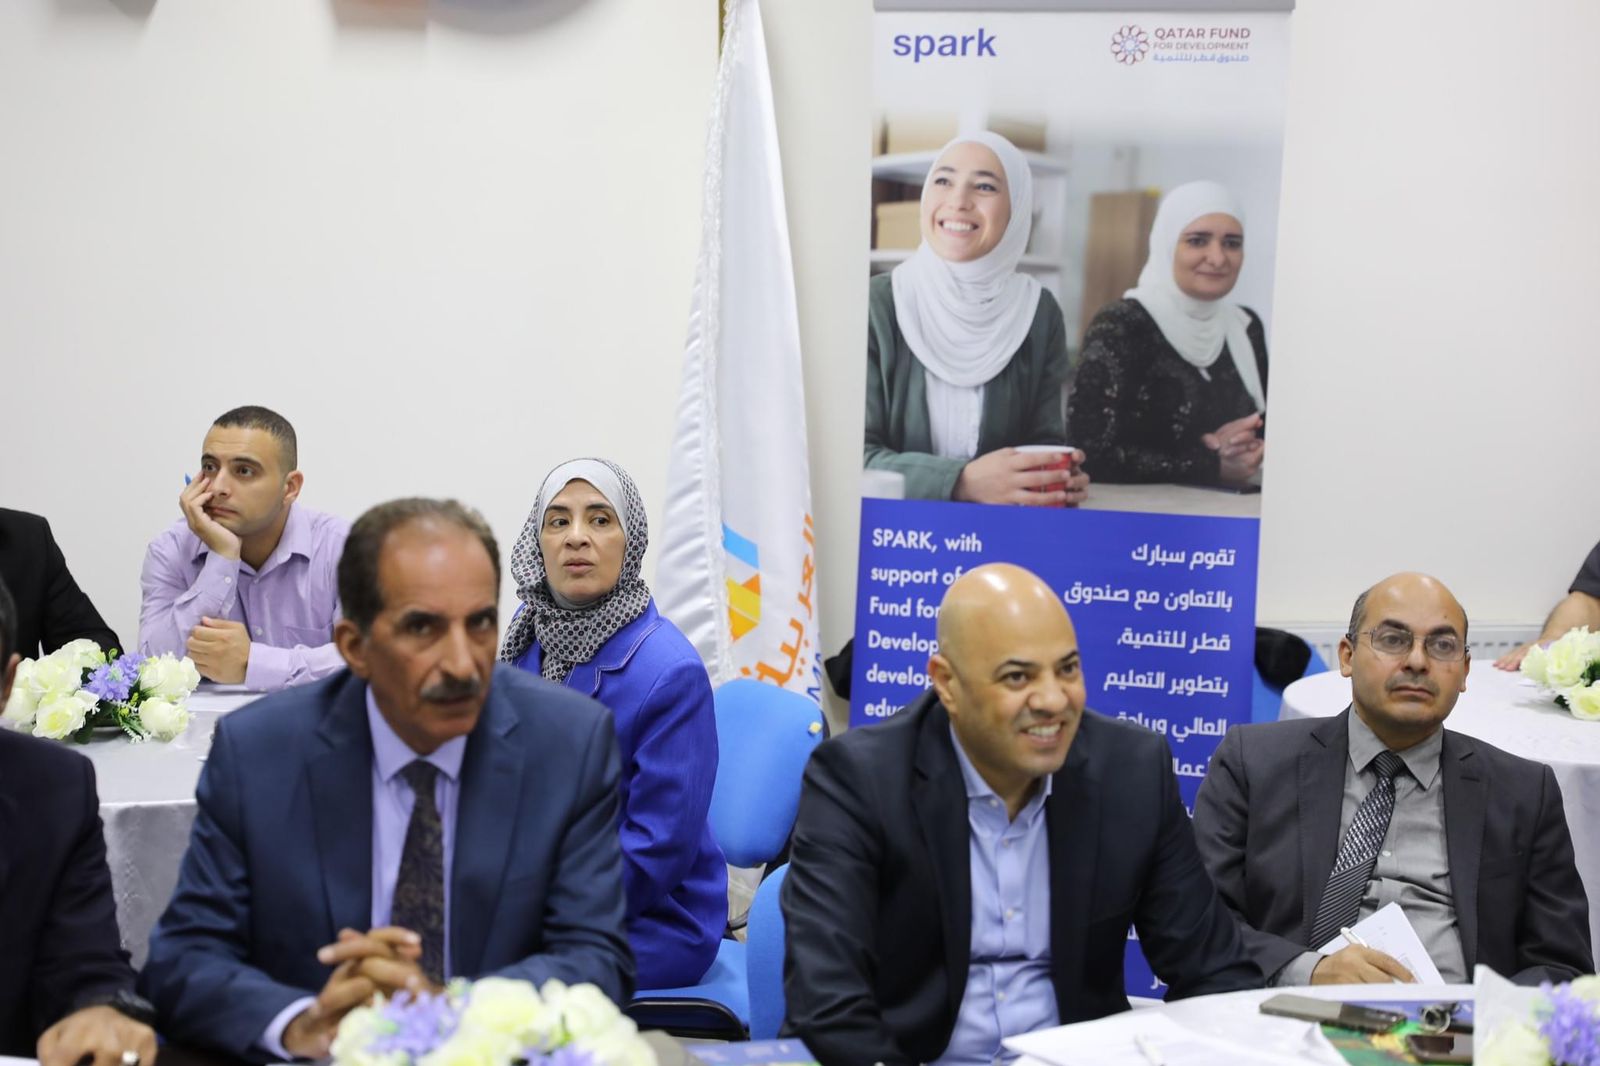 "عمان العربية" ومنظمة "سبارك" يعقدان اولى جلسات التعاون1